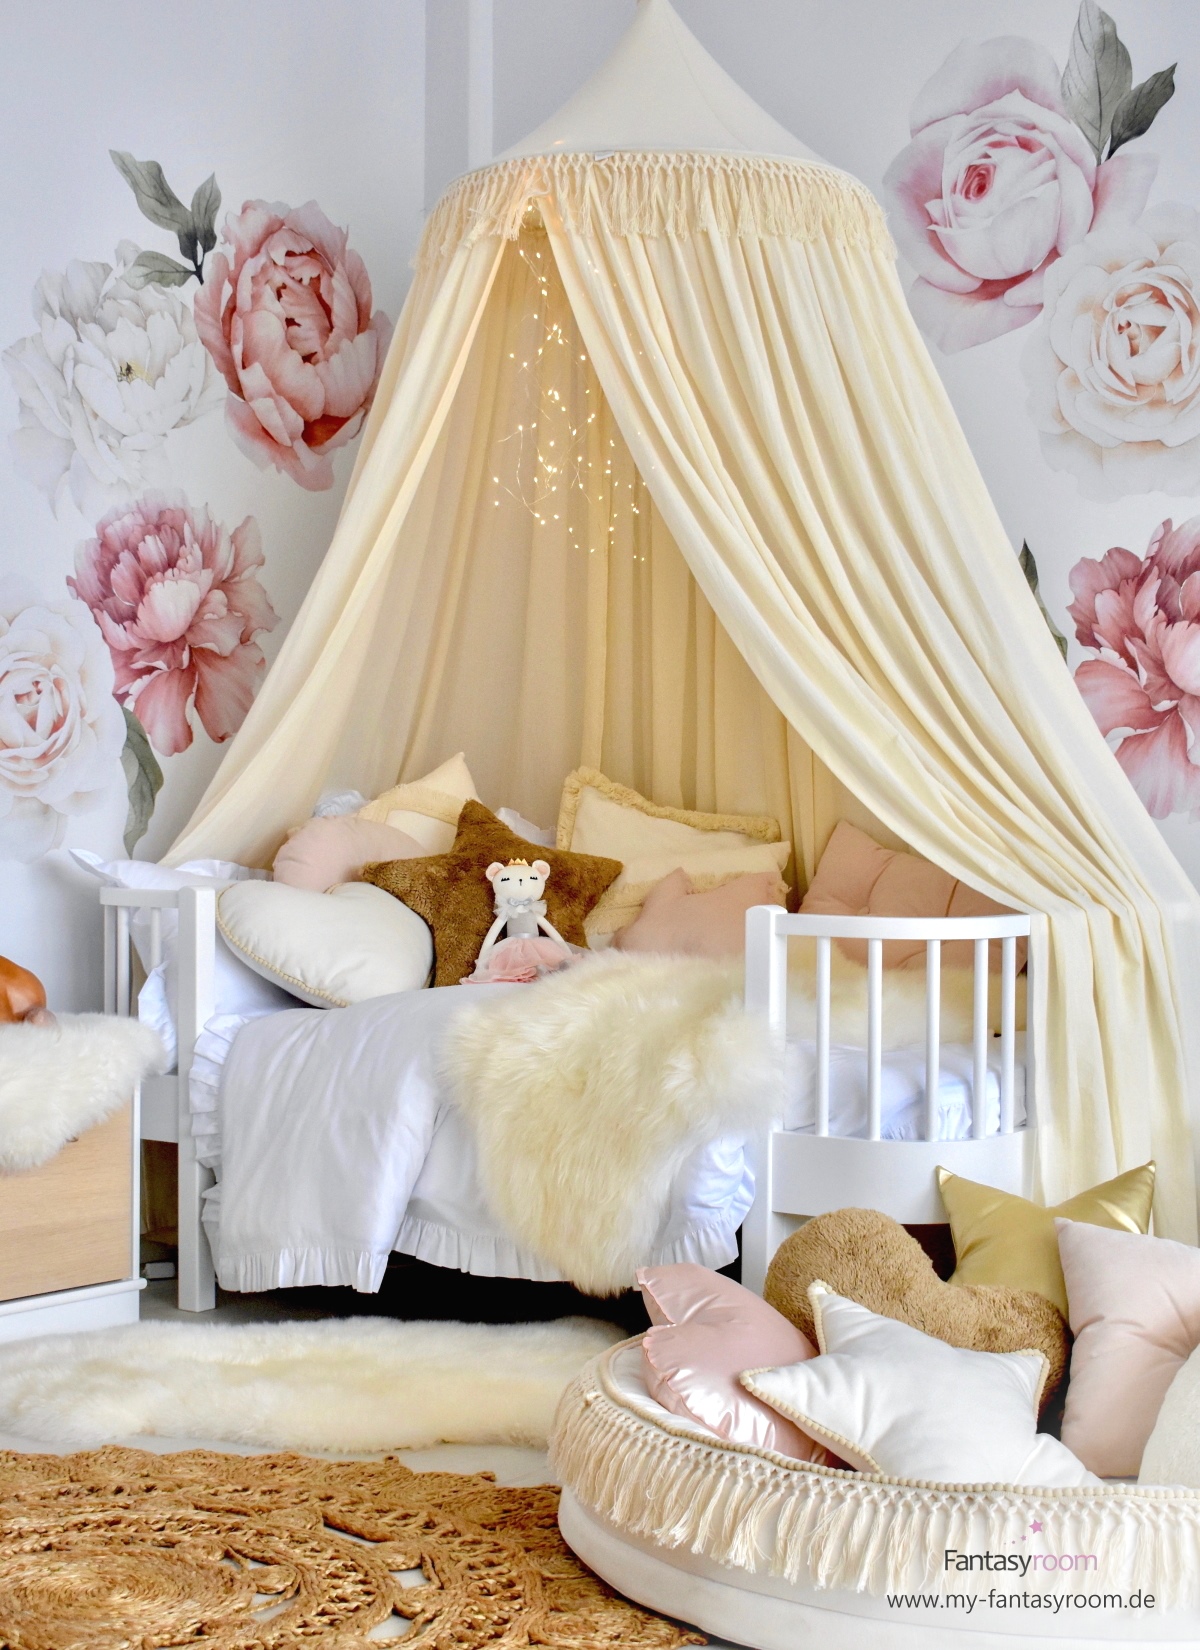 Kuscheliges Kinderbett mit XL Baldachin, vielen Kuschelkissen und Lammfellen